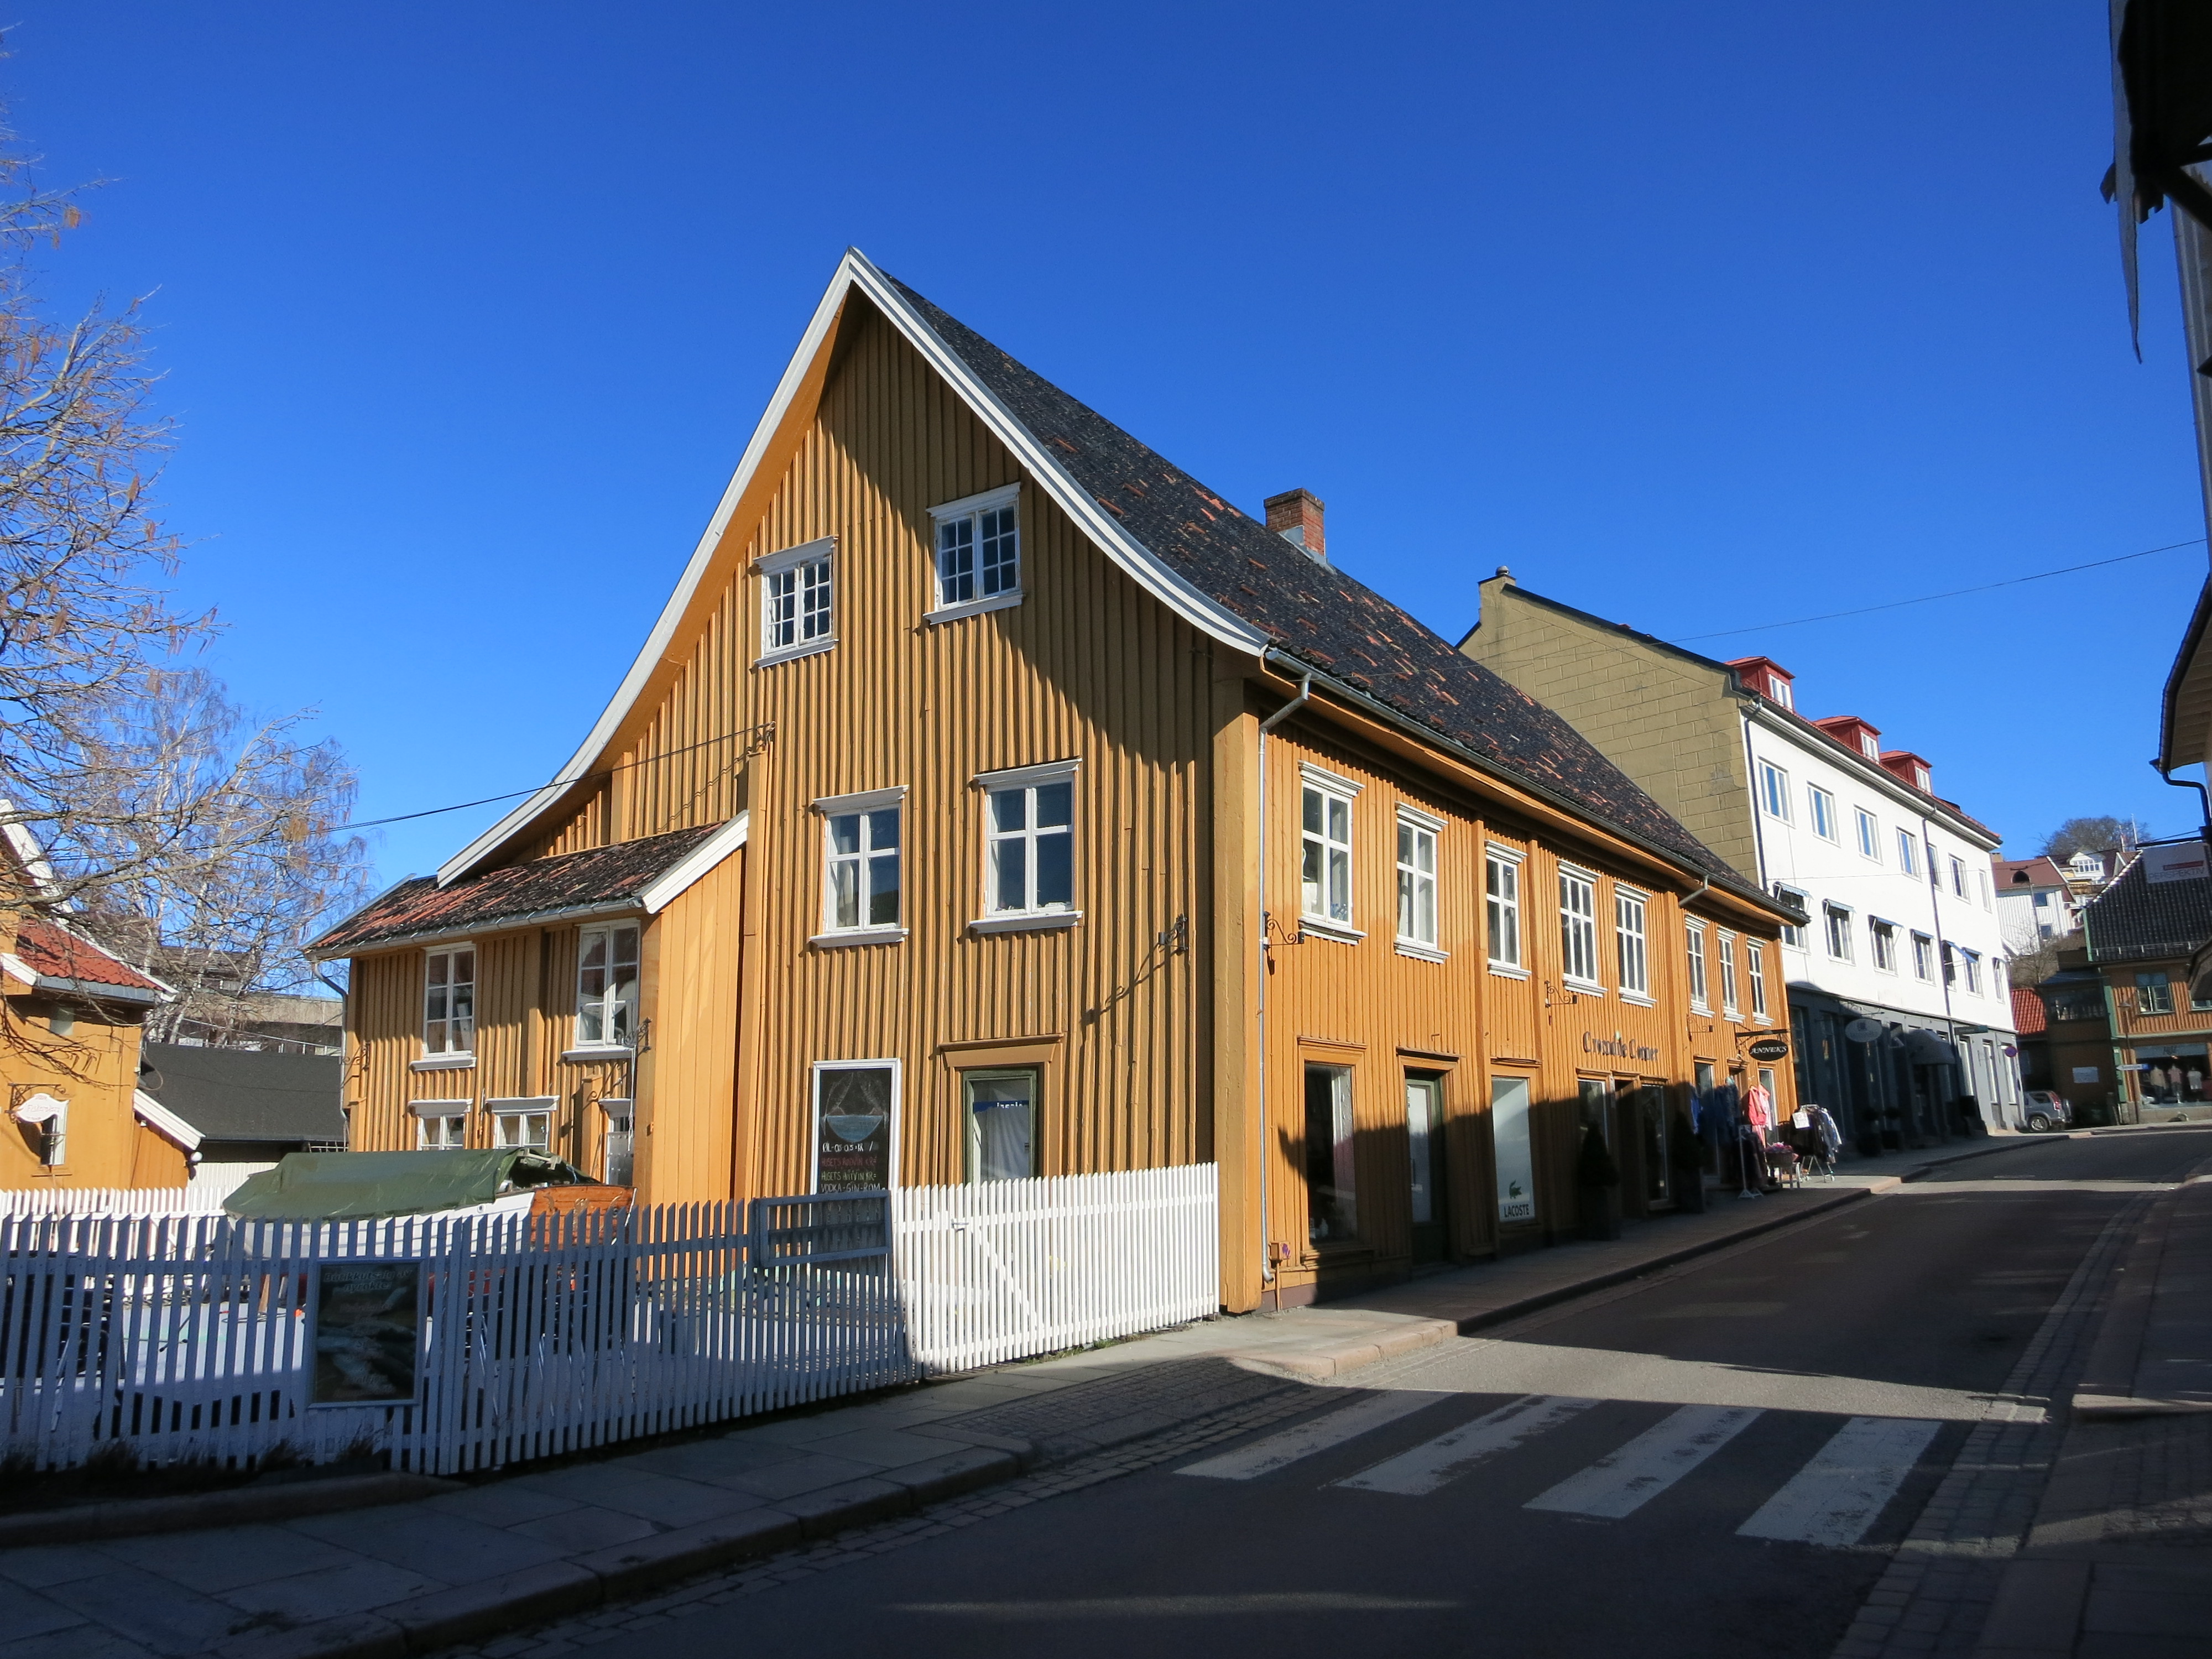 Bilde av handelshuset i Drøbak. Det hyggelige sennepsgule huset med skråtak ble oppført på slutten av 1700-tallet eller i første halvdel av 1800-tallet. Foto: Akershus fylkeskommune